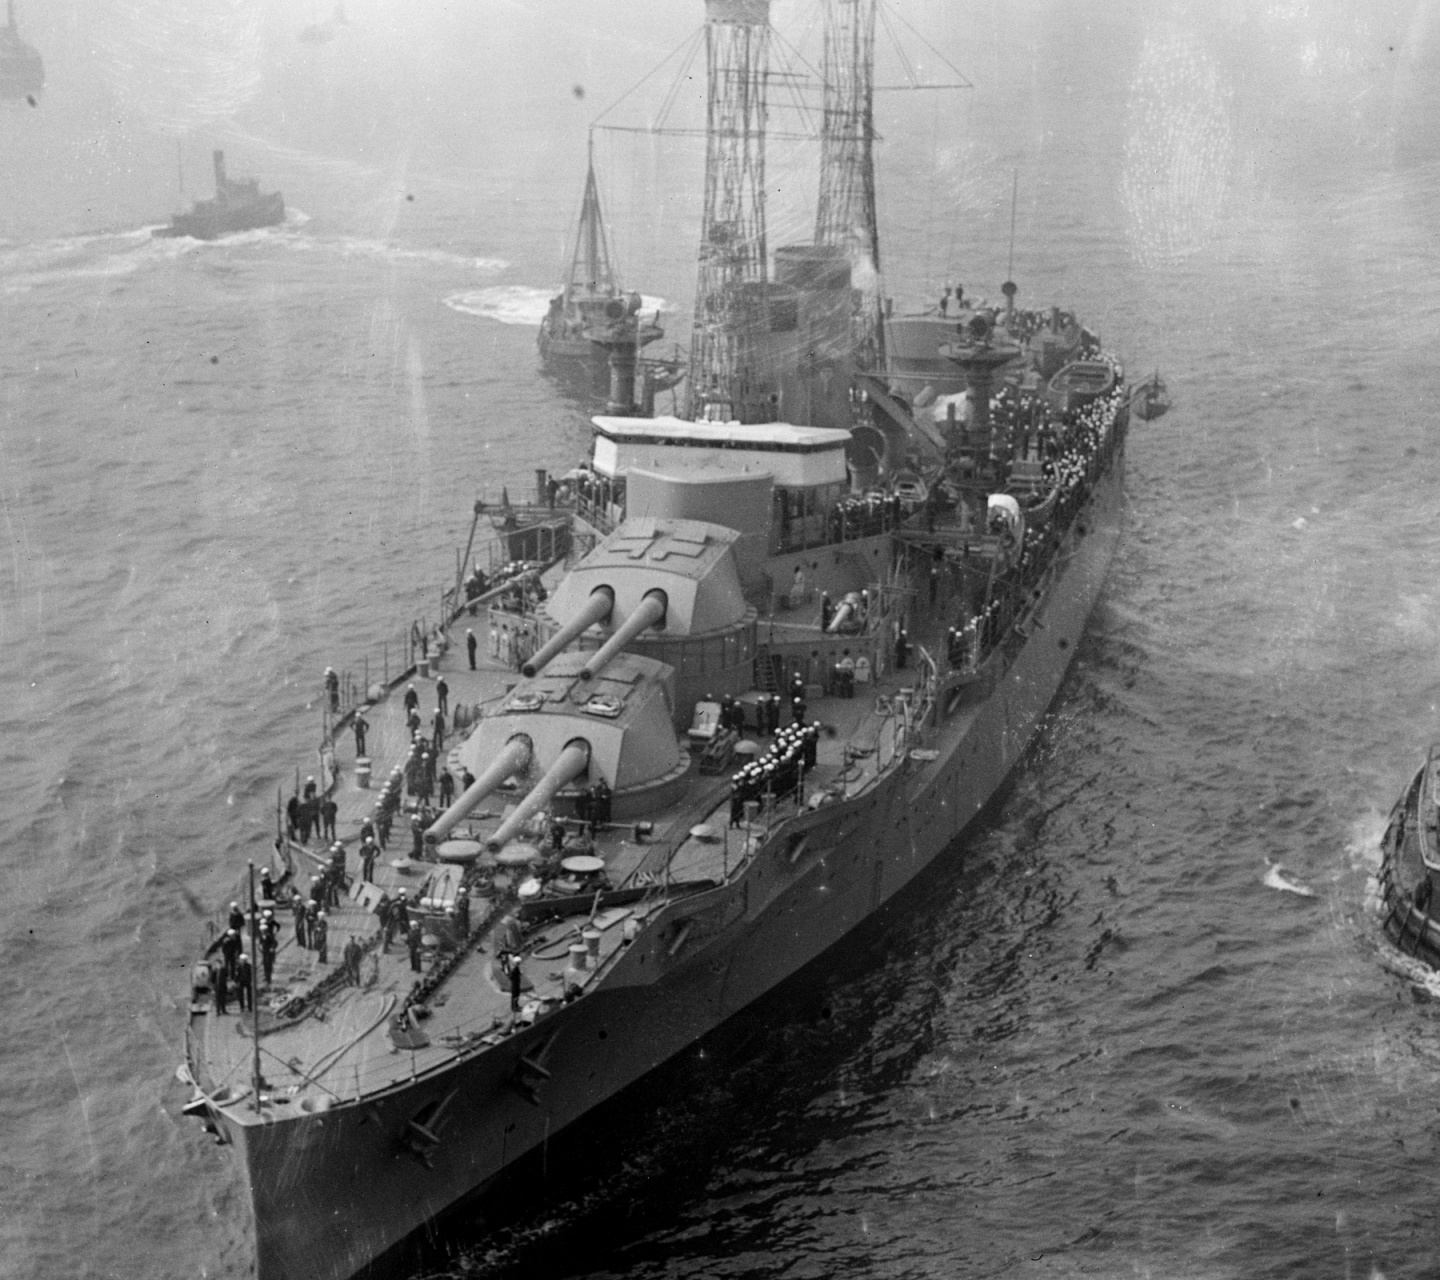 World War 2 Battleship